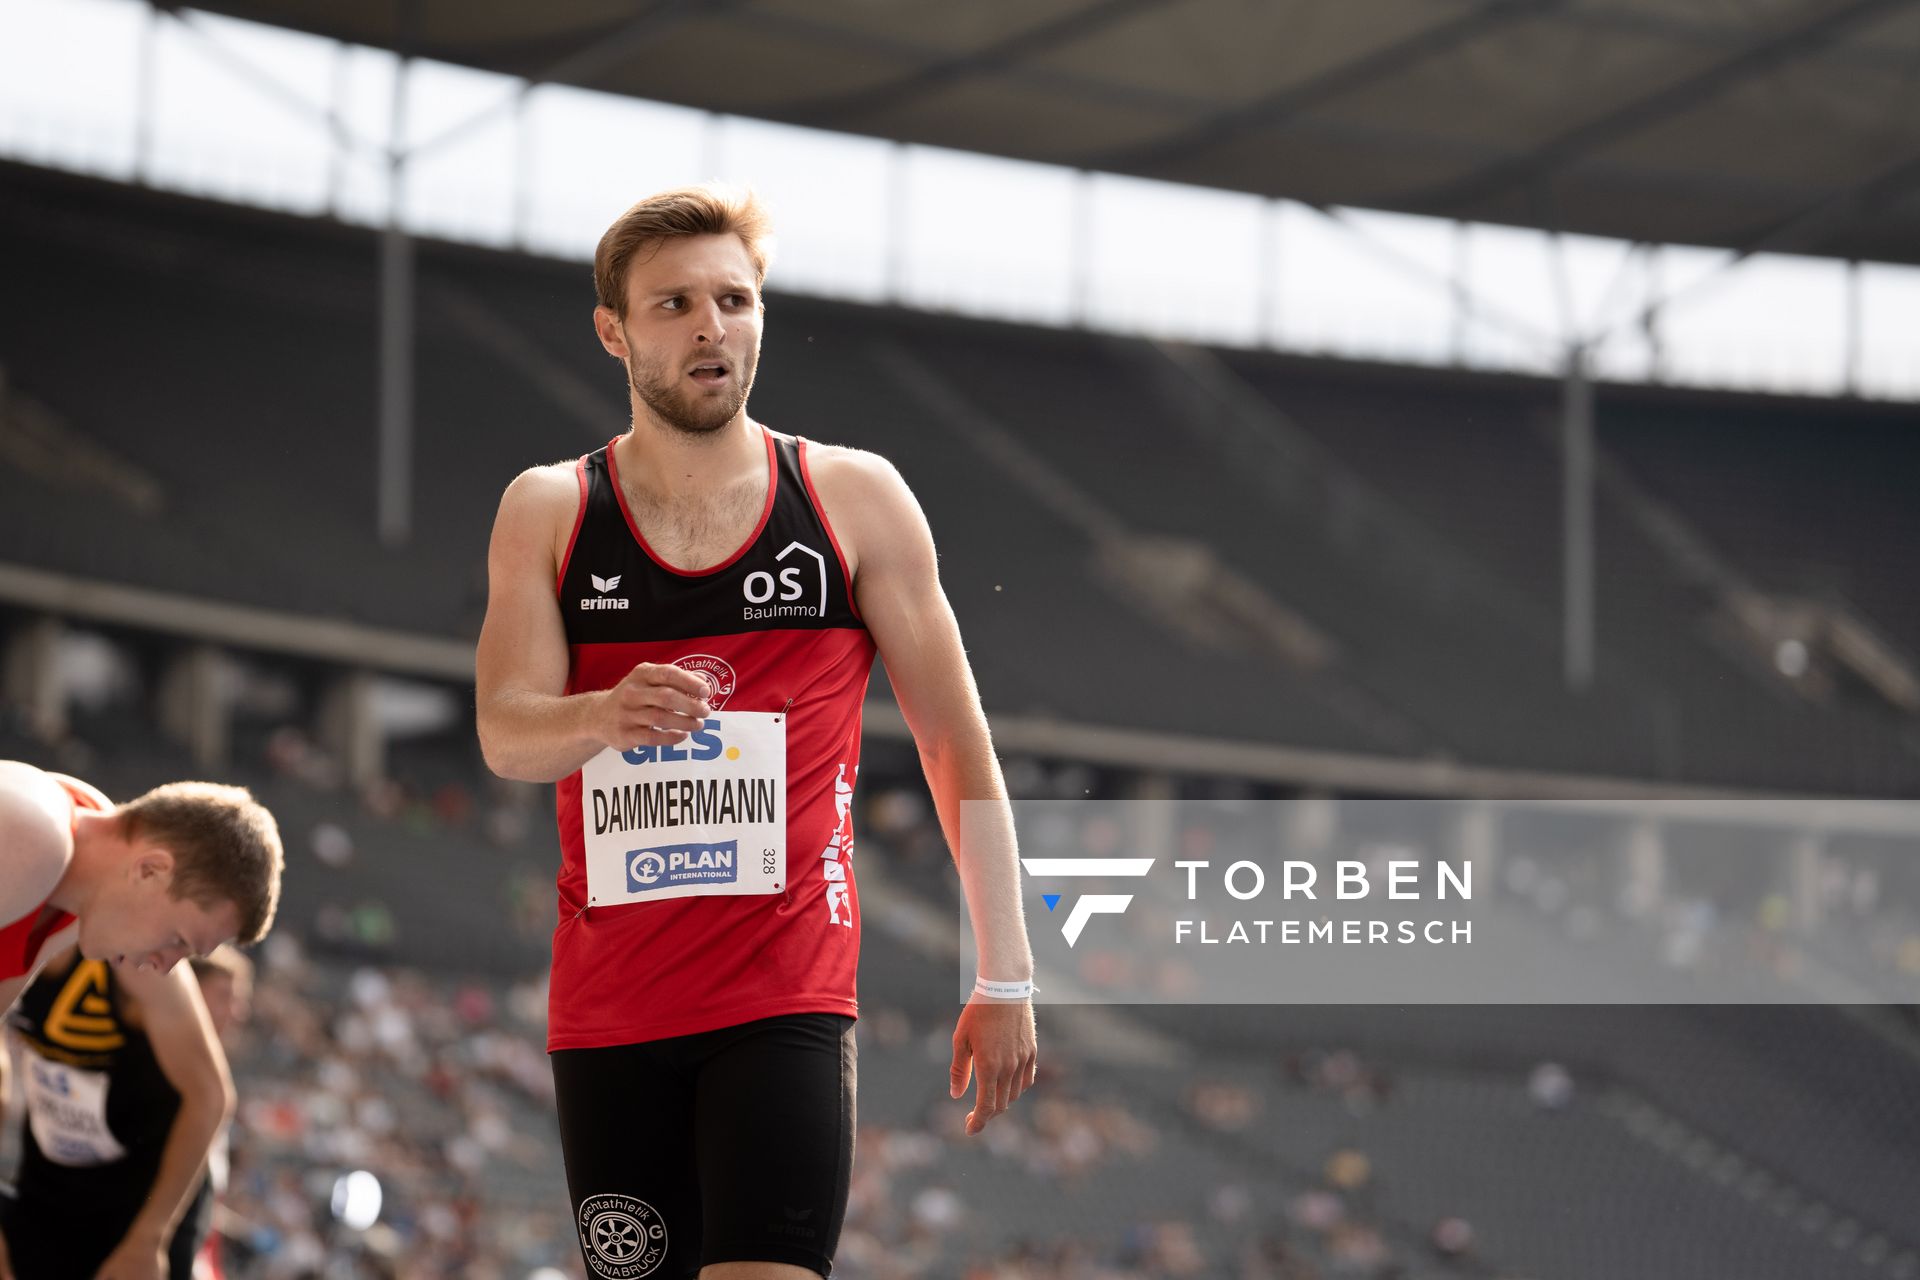 Fabian Dammermann (LG Osnabrueck) waehrend der deutschen Leichtathletik-Meisterschaften im Olympiastadion am 25.06.2022 in Berlin